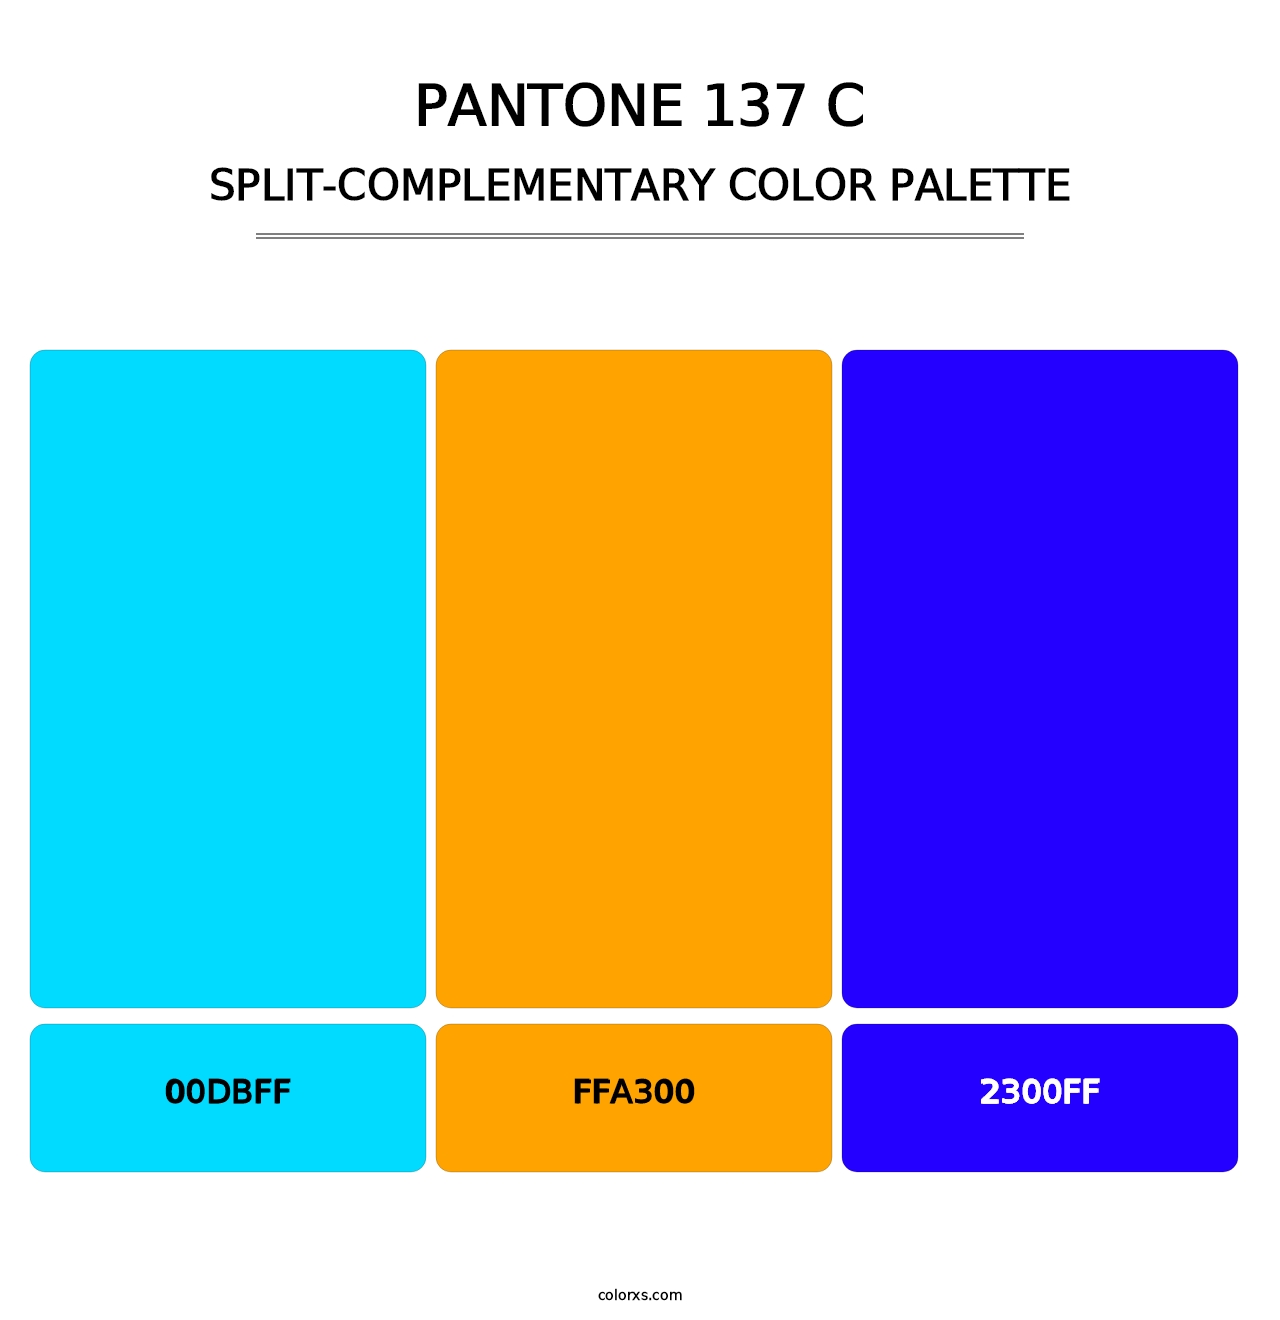 PANTONE 137 C - Split-Complementary Color Palette